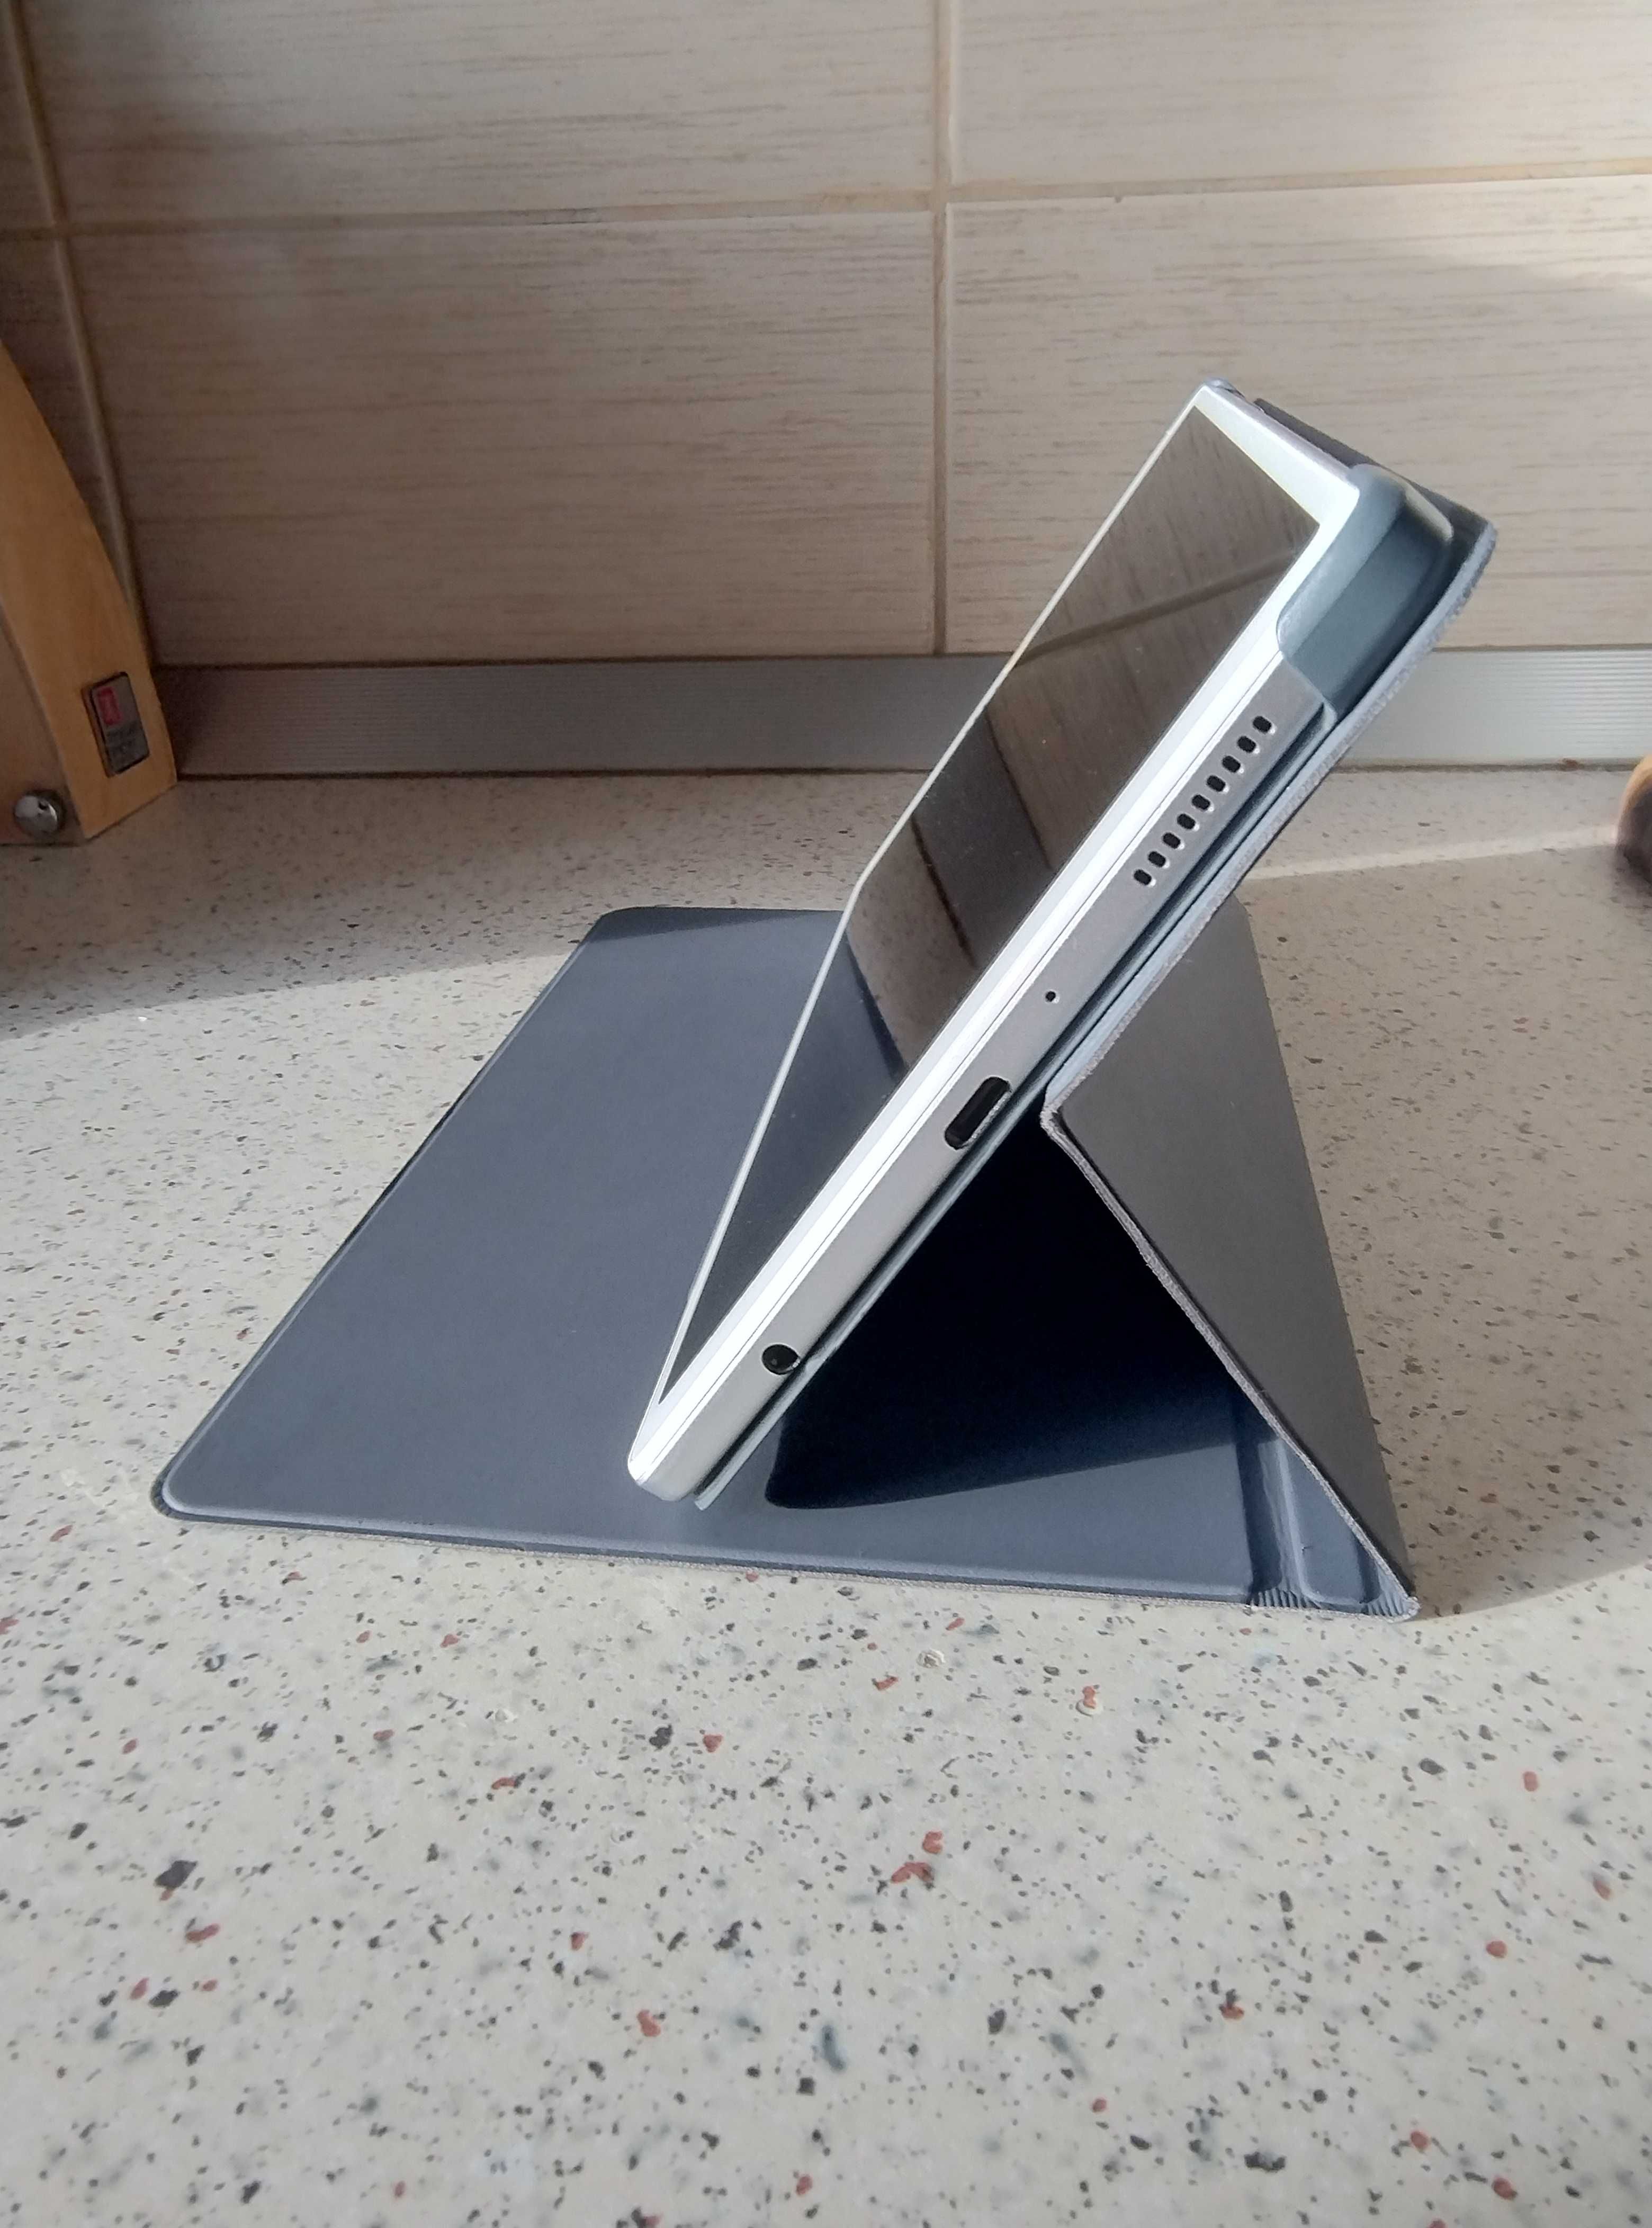 Samsung Galaxy Tab A7 Lite (Silver)